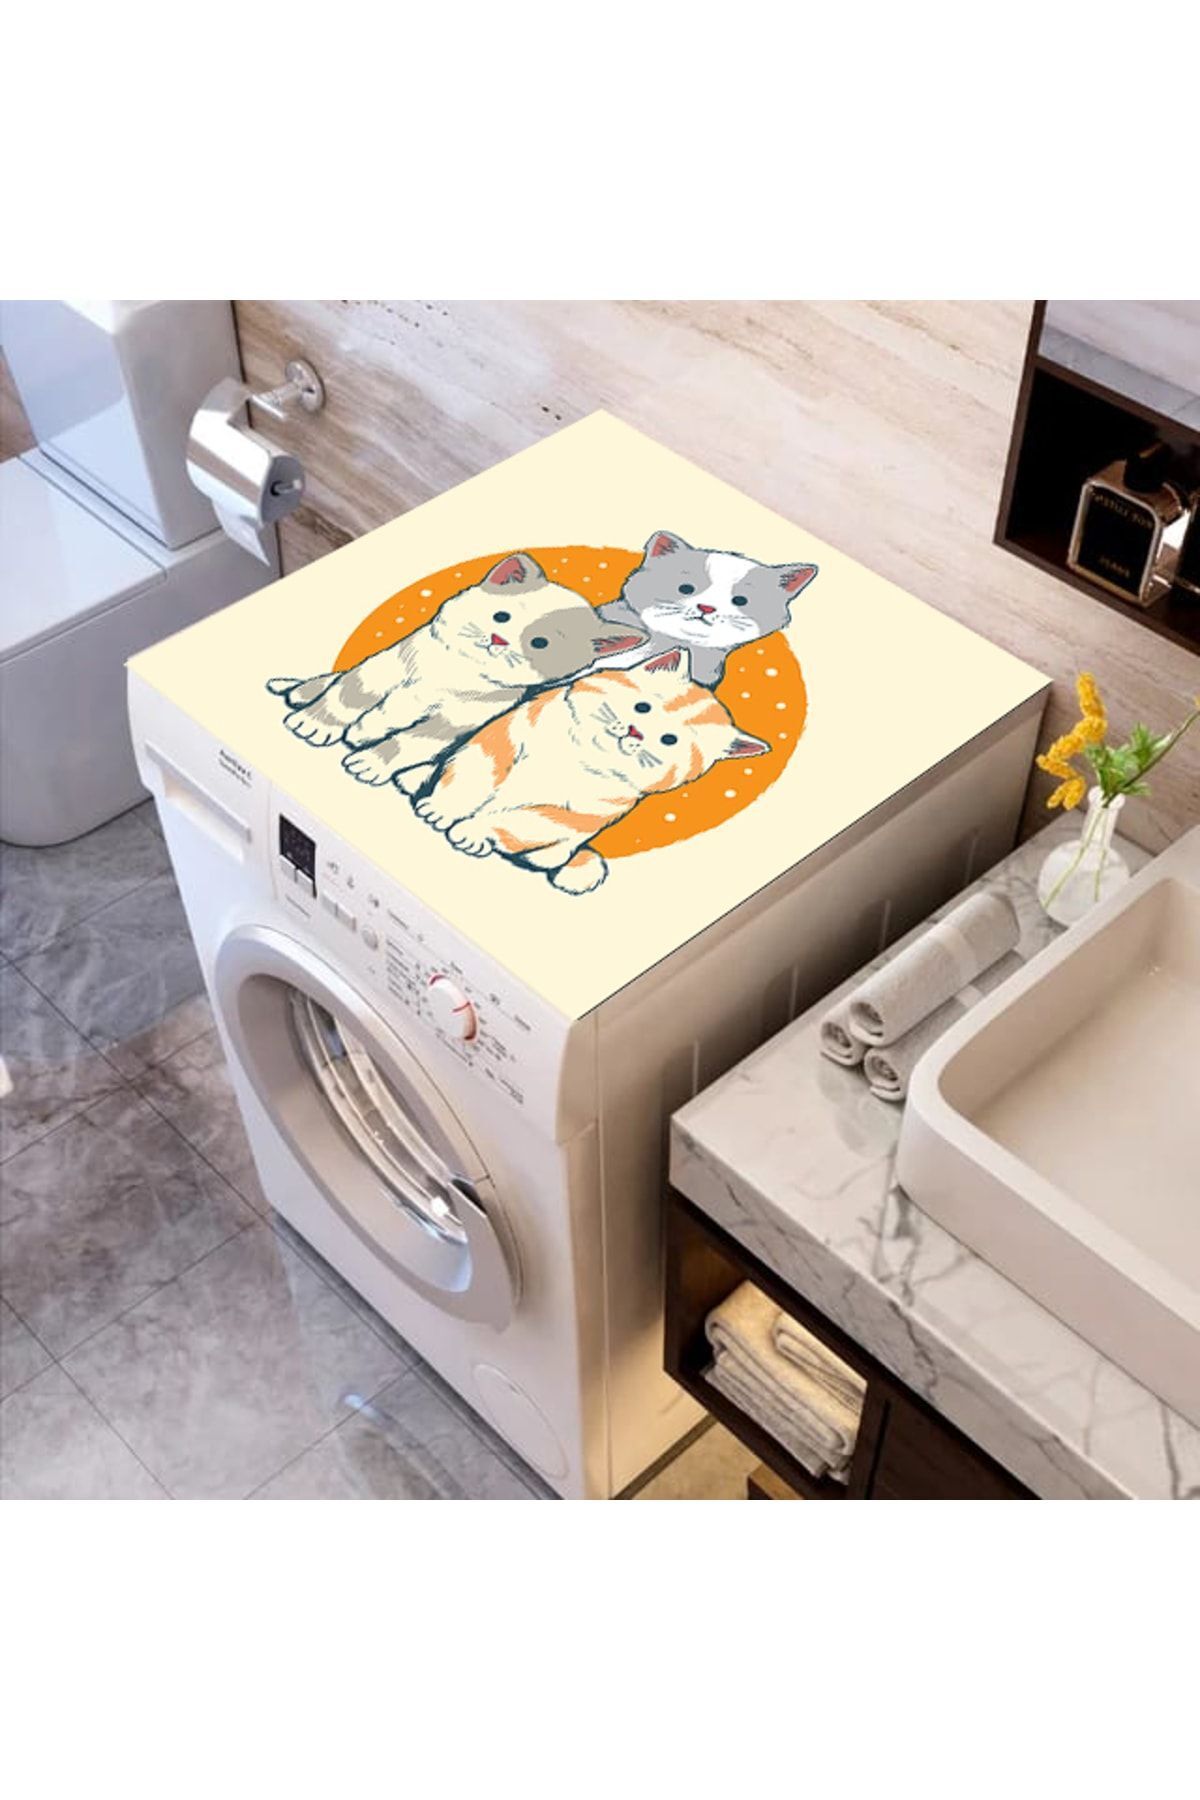 ALAMODECOR Renkli Baskılı Çamaşır Makine Örtüsü Kumaş Örtü Kediler 62cm X 100 Cm | Banyo Düzenleyici